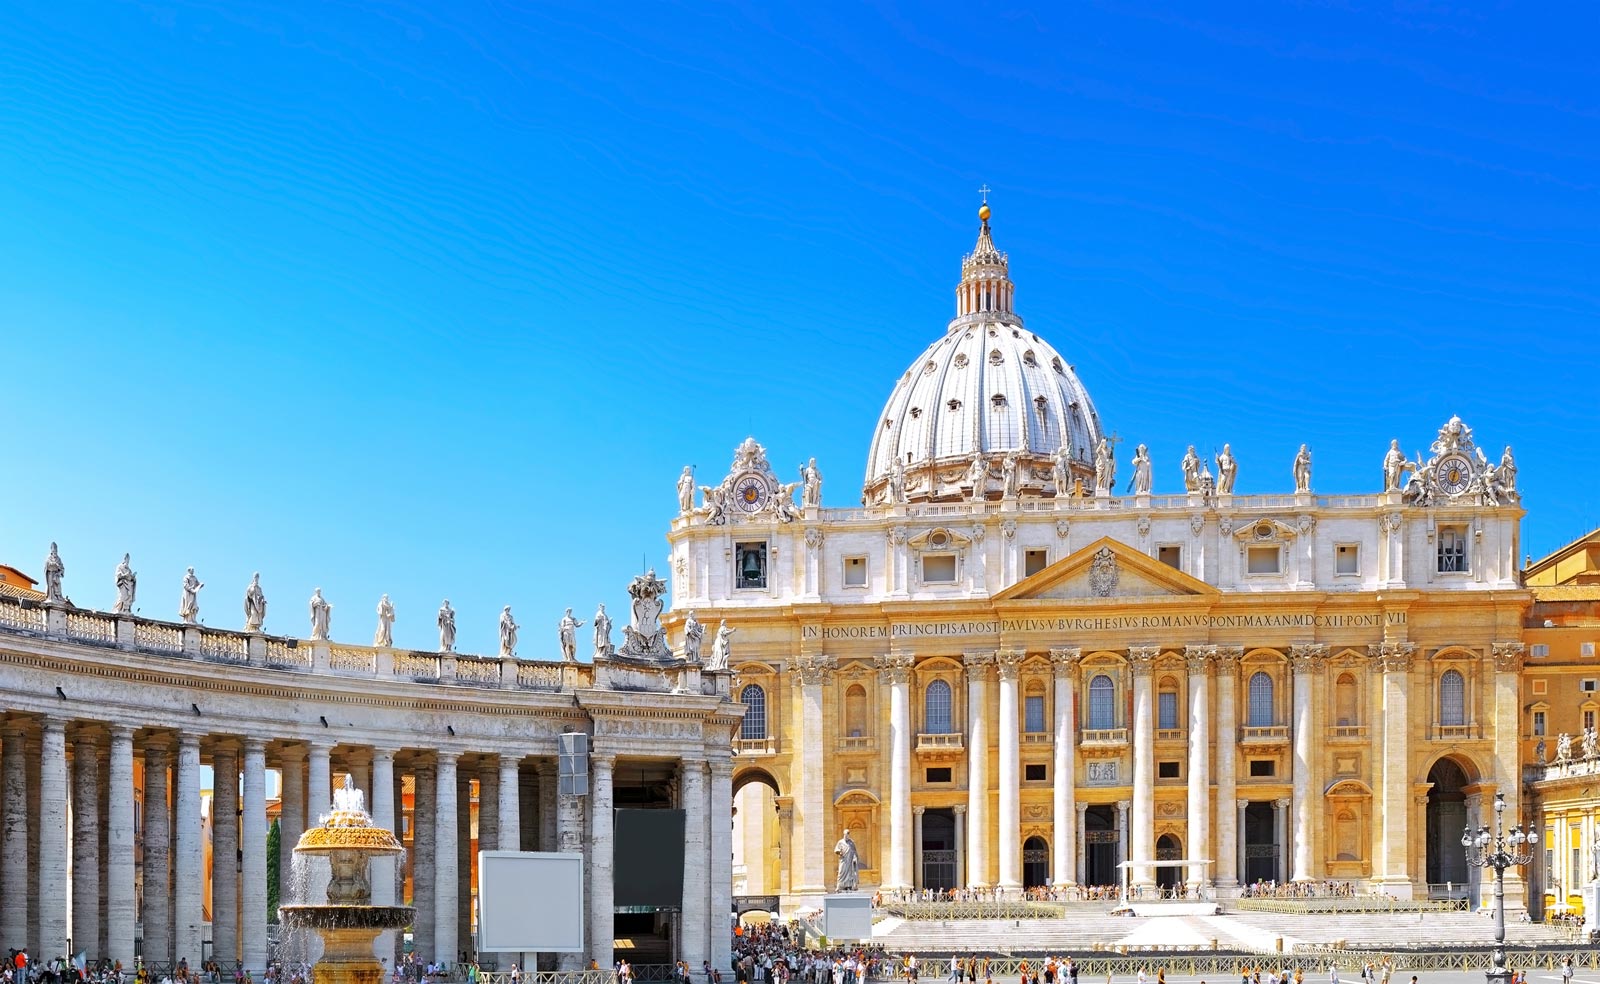 La Ciudad del Vaticano es uno de los lugares religiosos y culturales más importantes, que atrae a millones de visitantes al año y es una visita obligada cuando se está en Roma.